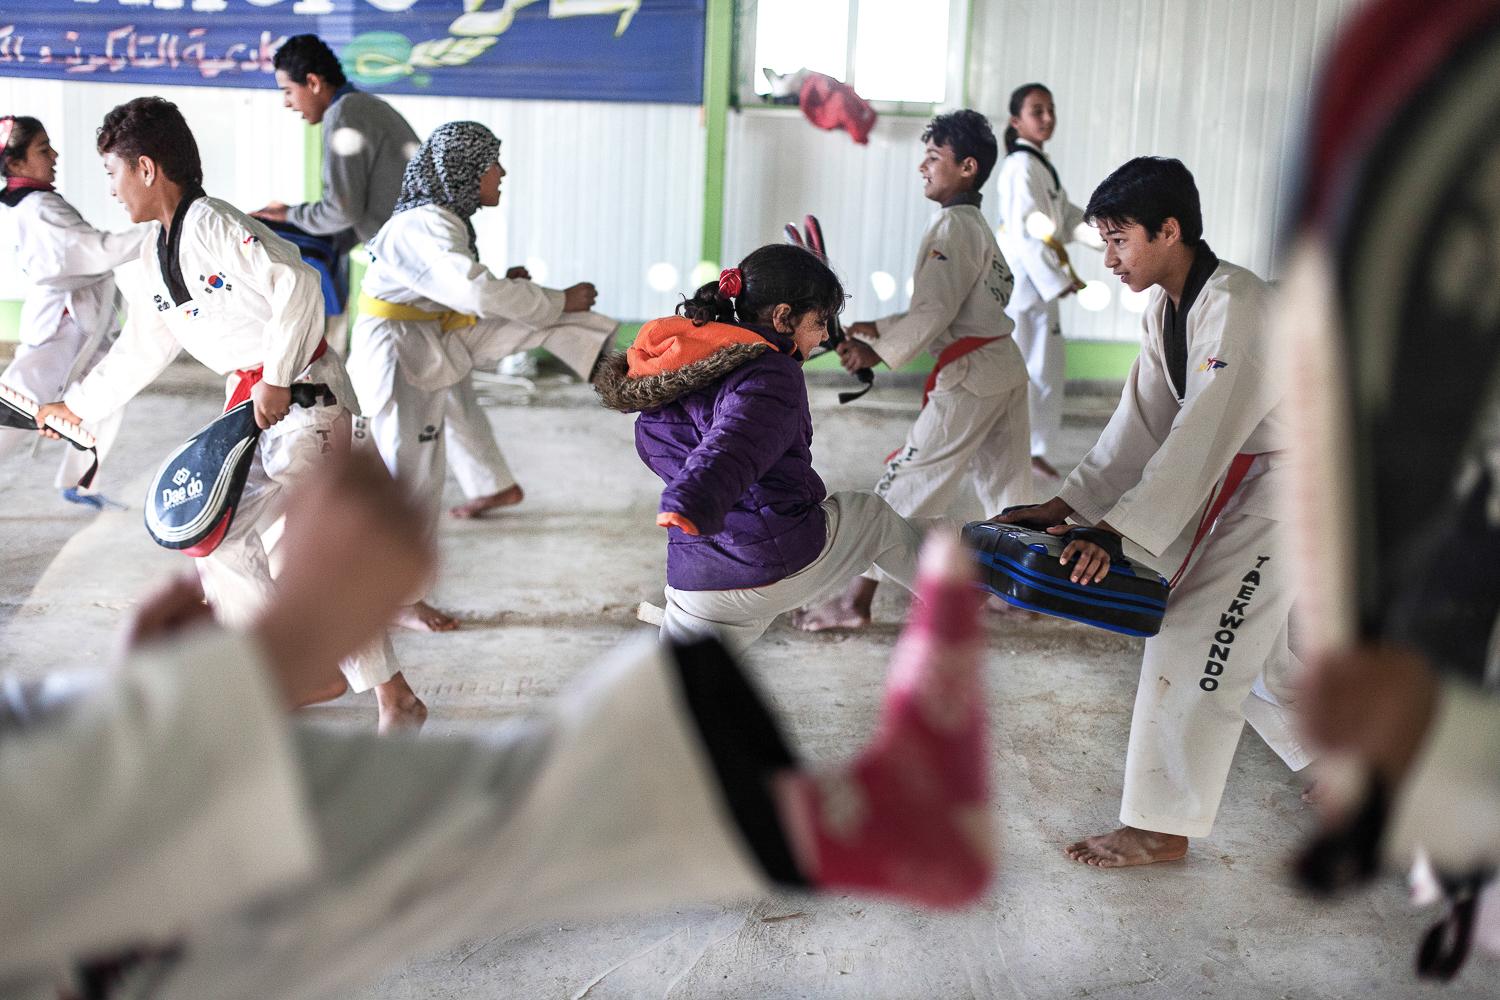 Zaatari Taekwondo School -   Zaatari. Jordan. November 2014.  
 The number of...